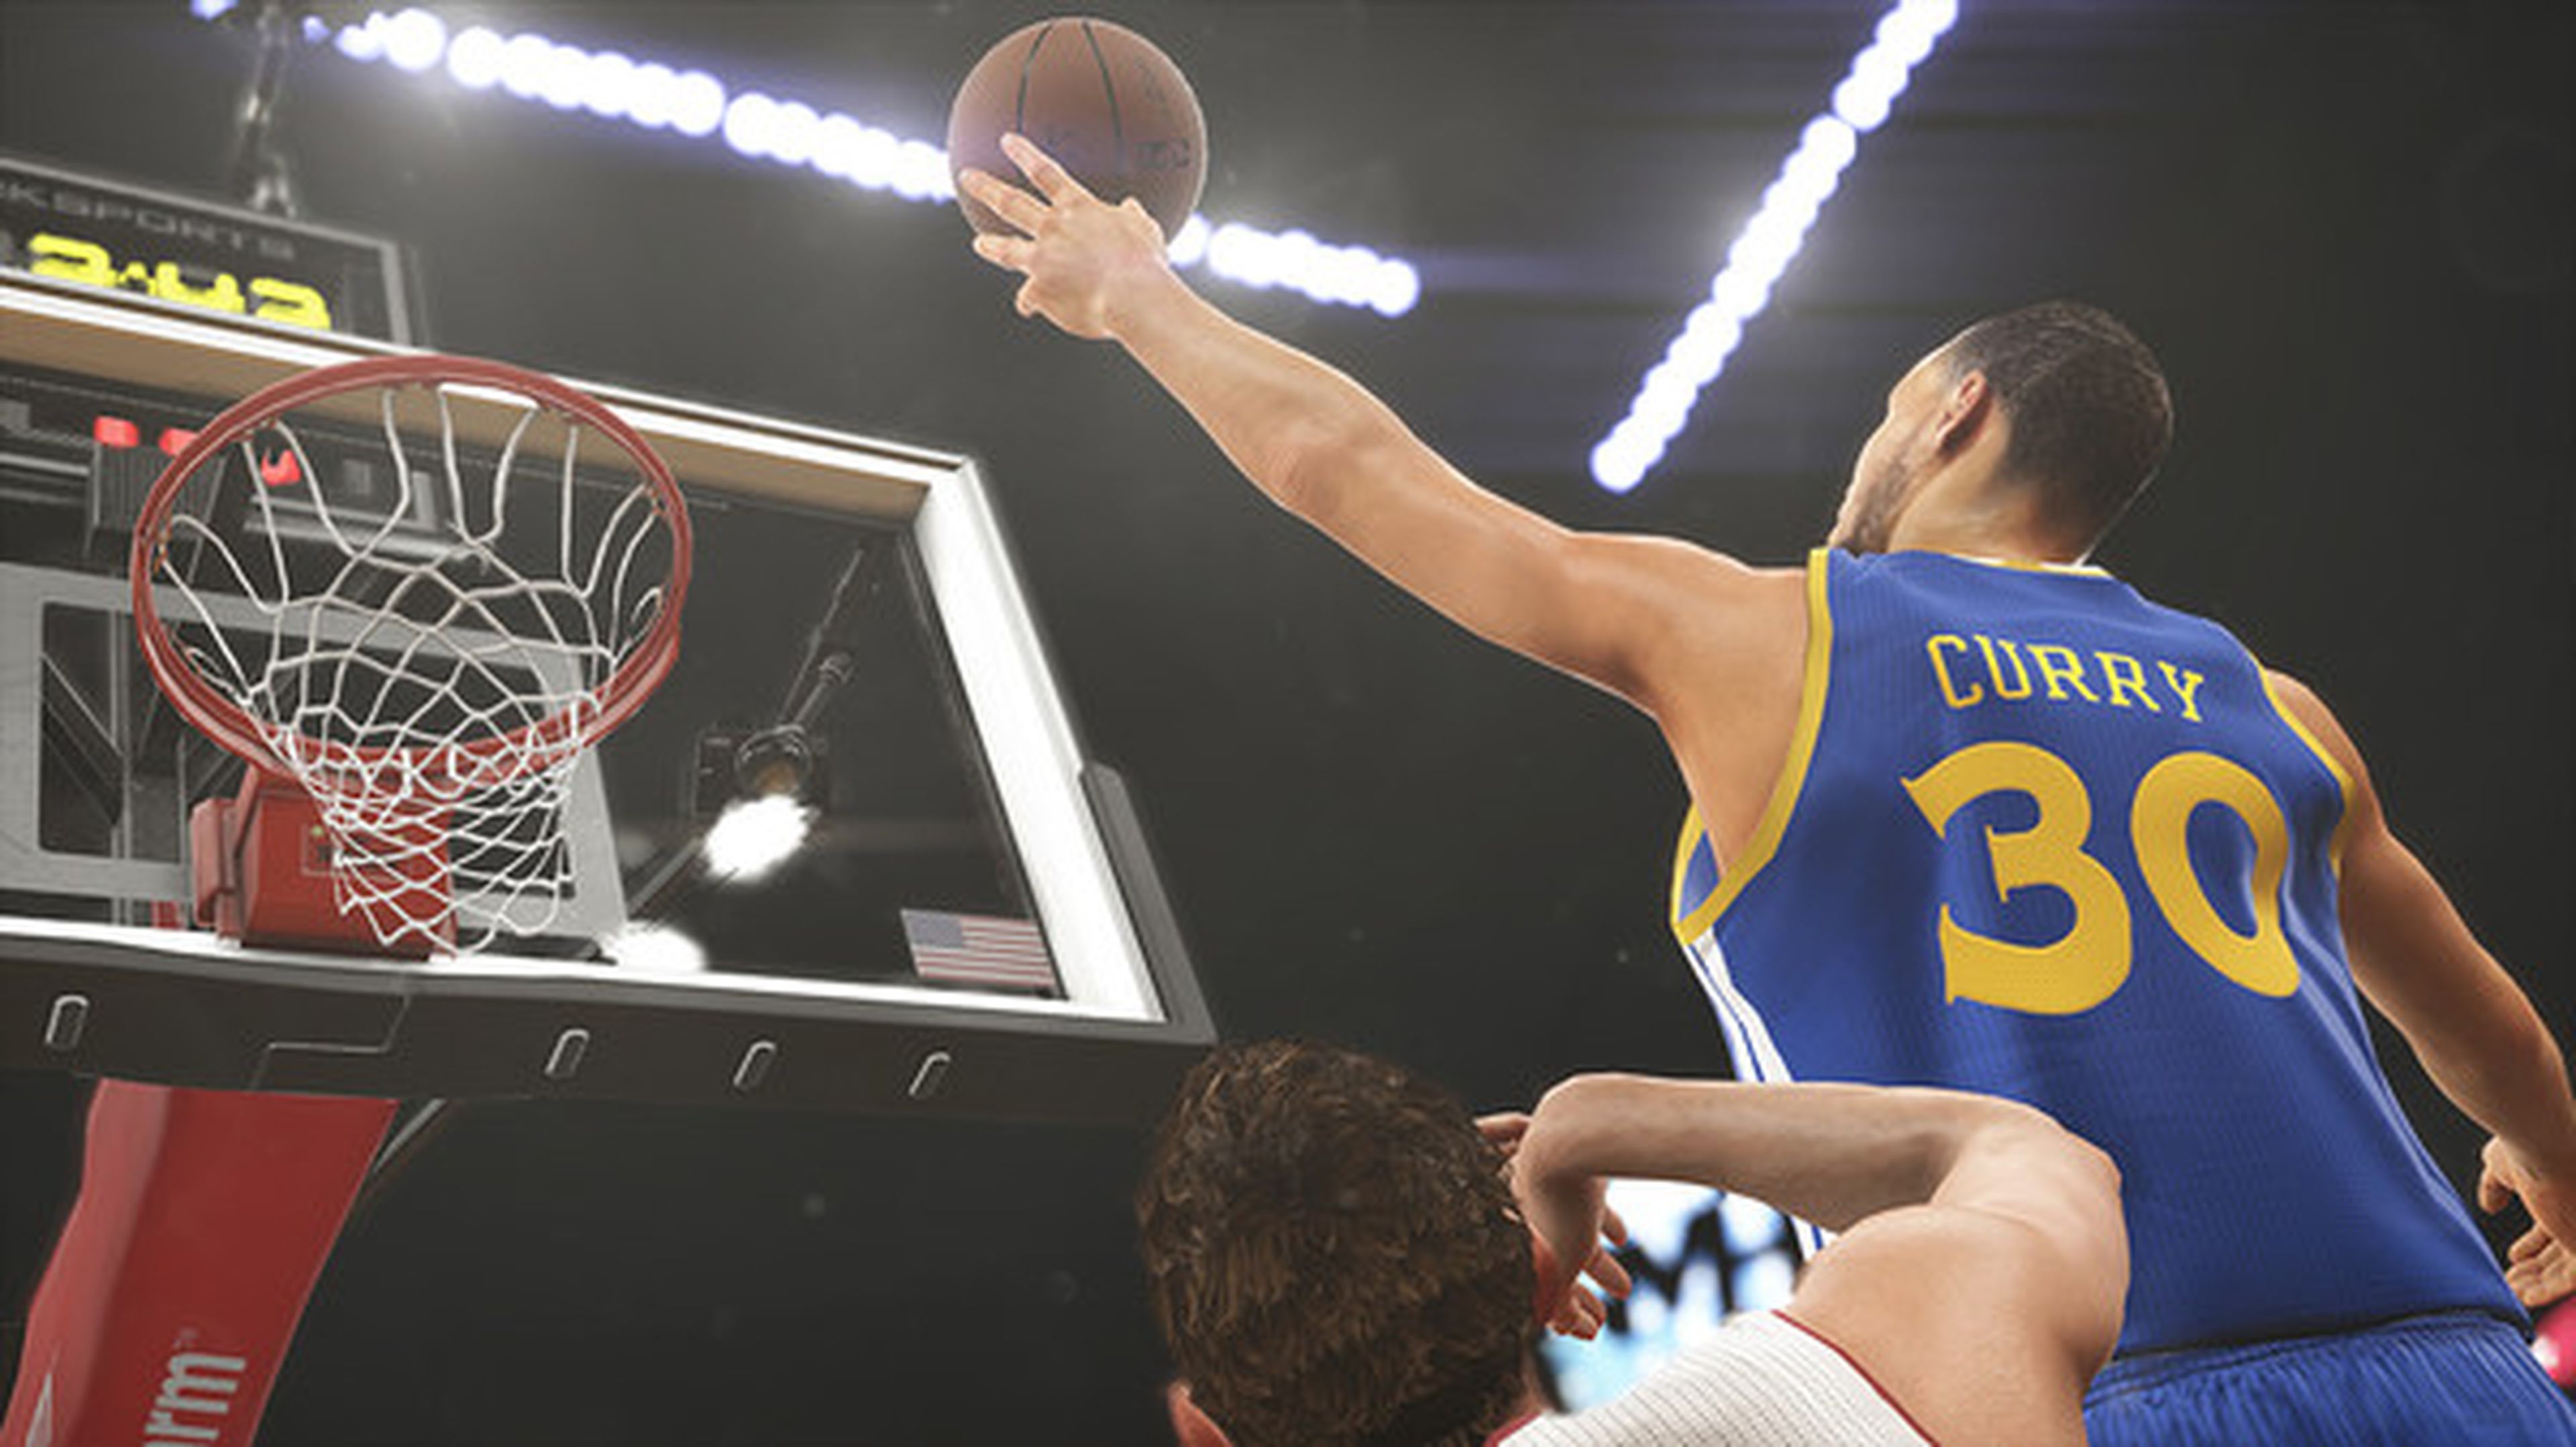 Juega gratis a NBA 2K15 este fin de semana en Steam